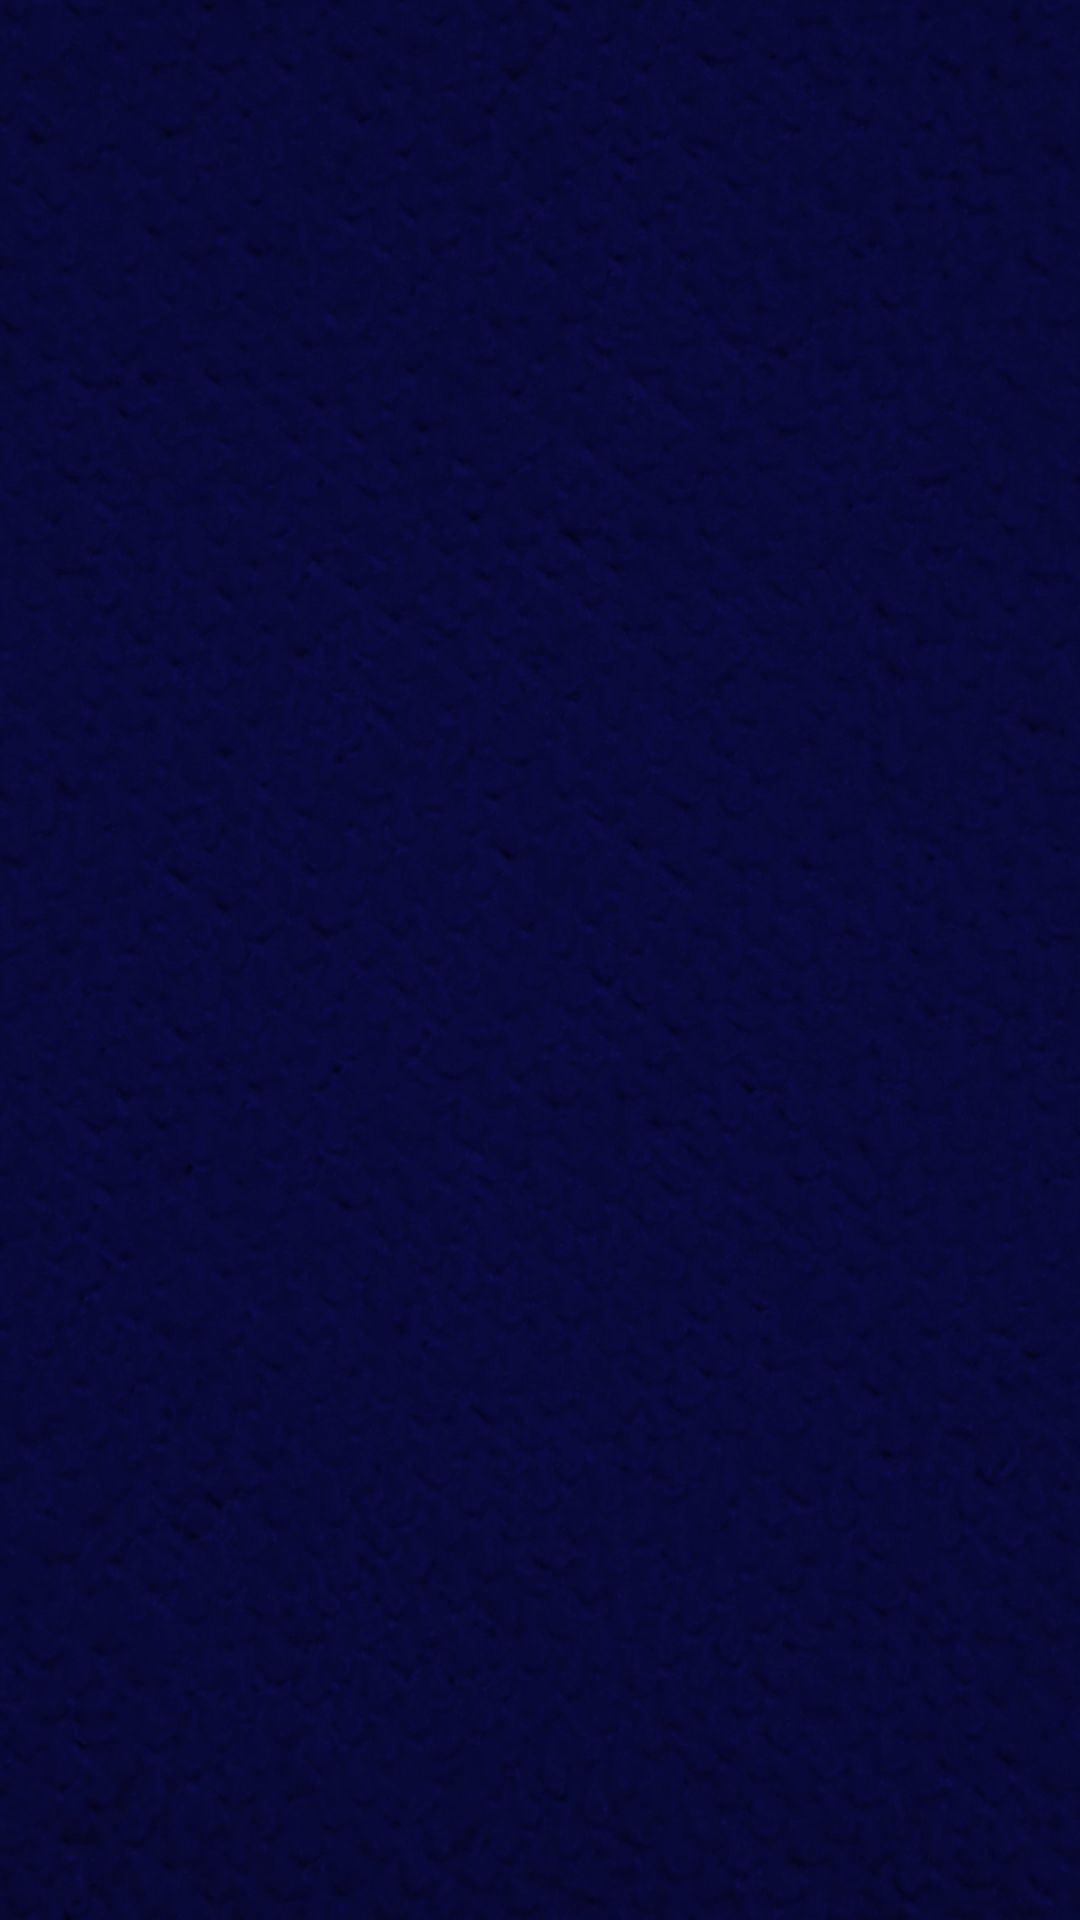 Dark Blue Abstract Wallpaper, Dark Blue .wallpaperafari.com